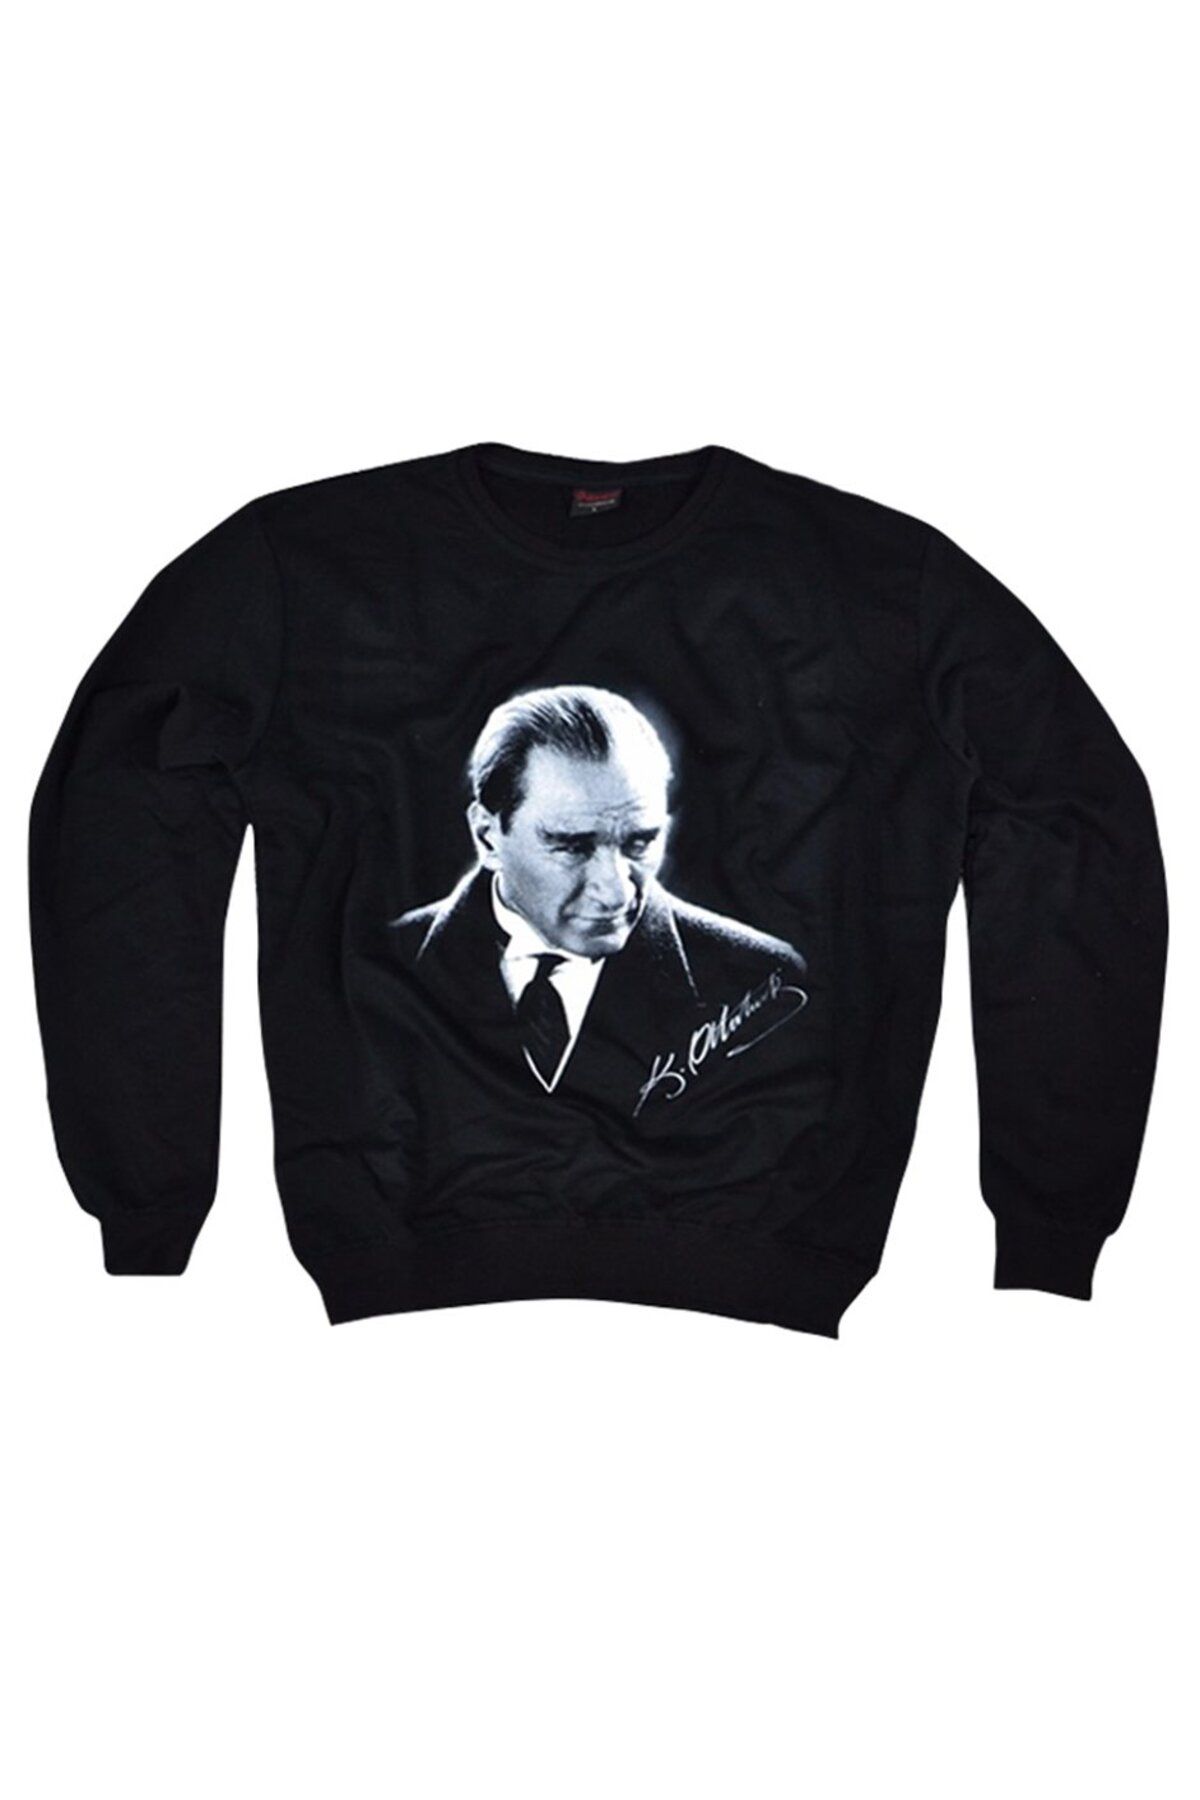 fame-stoned Mustafa Kemal Atatürk